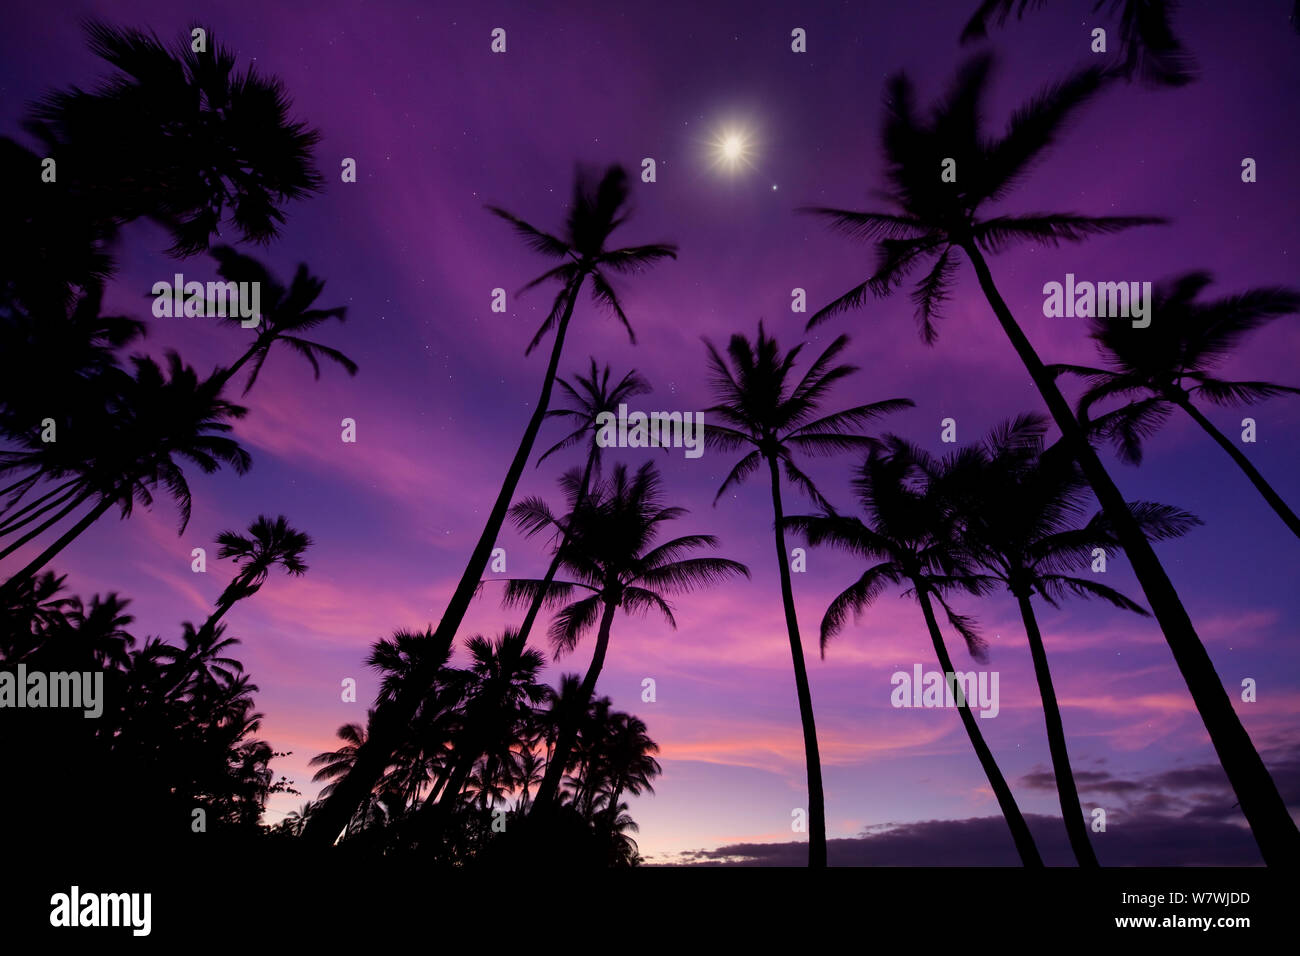 Silhouetten von Palmen in der Dämmerung, mit dem Mond und Sterne Overhead, Hawaii. Juli 2011. Stockfoto